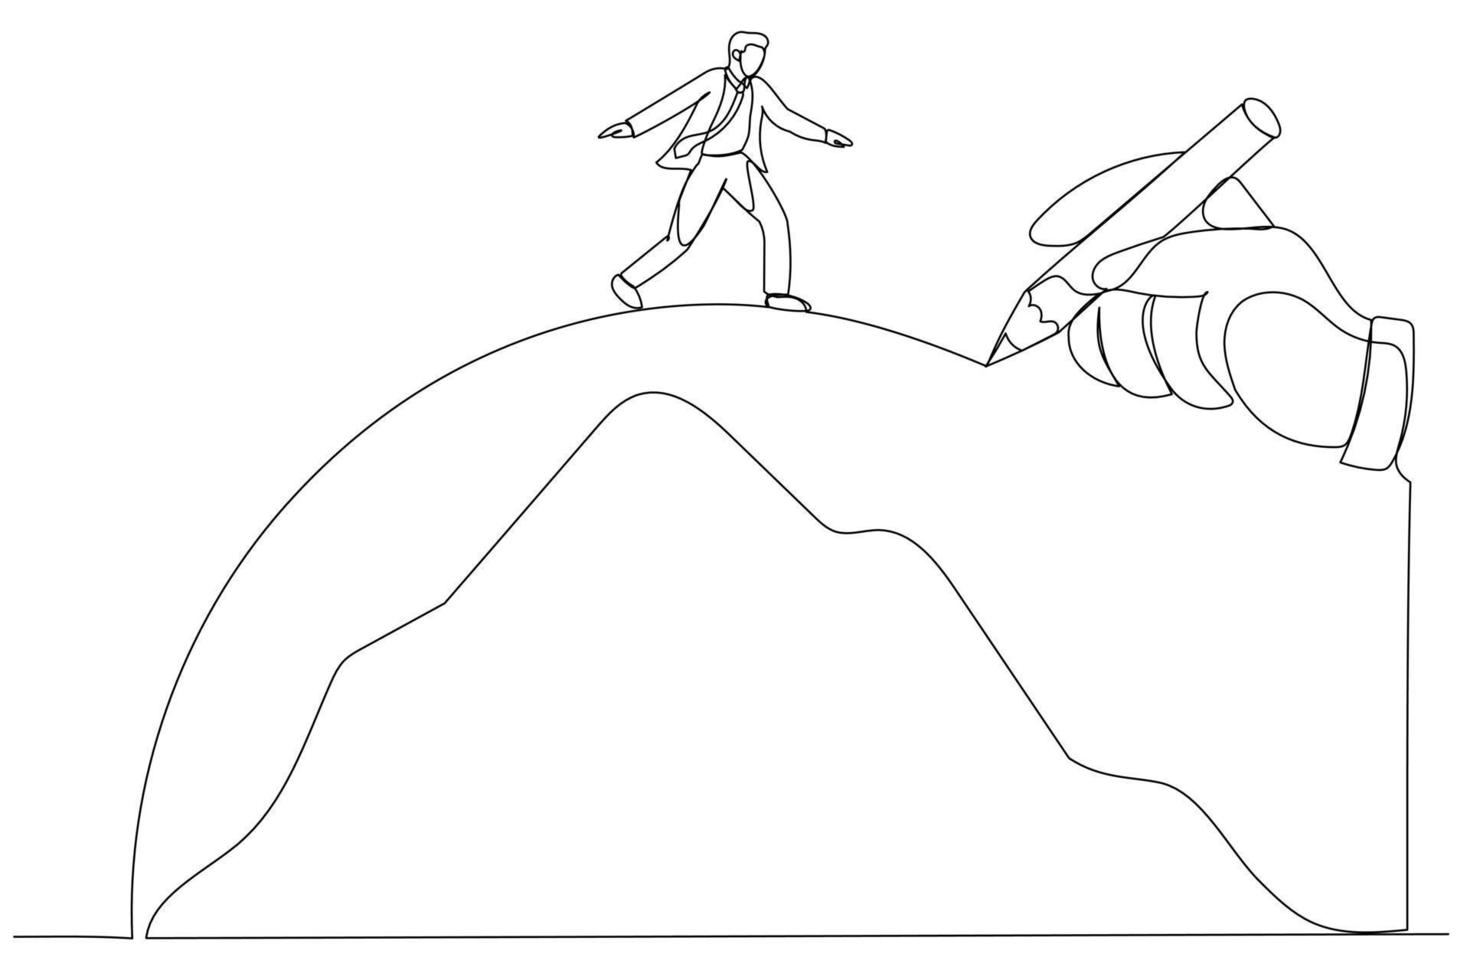 le dessin d'une main géante dessine un chemin pour aider l'homme d'affaires à traverser les montagnes, métaphore pour vaincre l'adversité. art de style une ligne vecteur